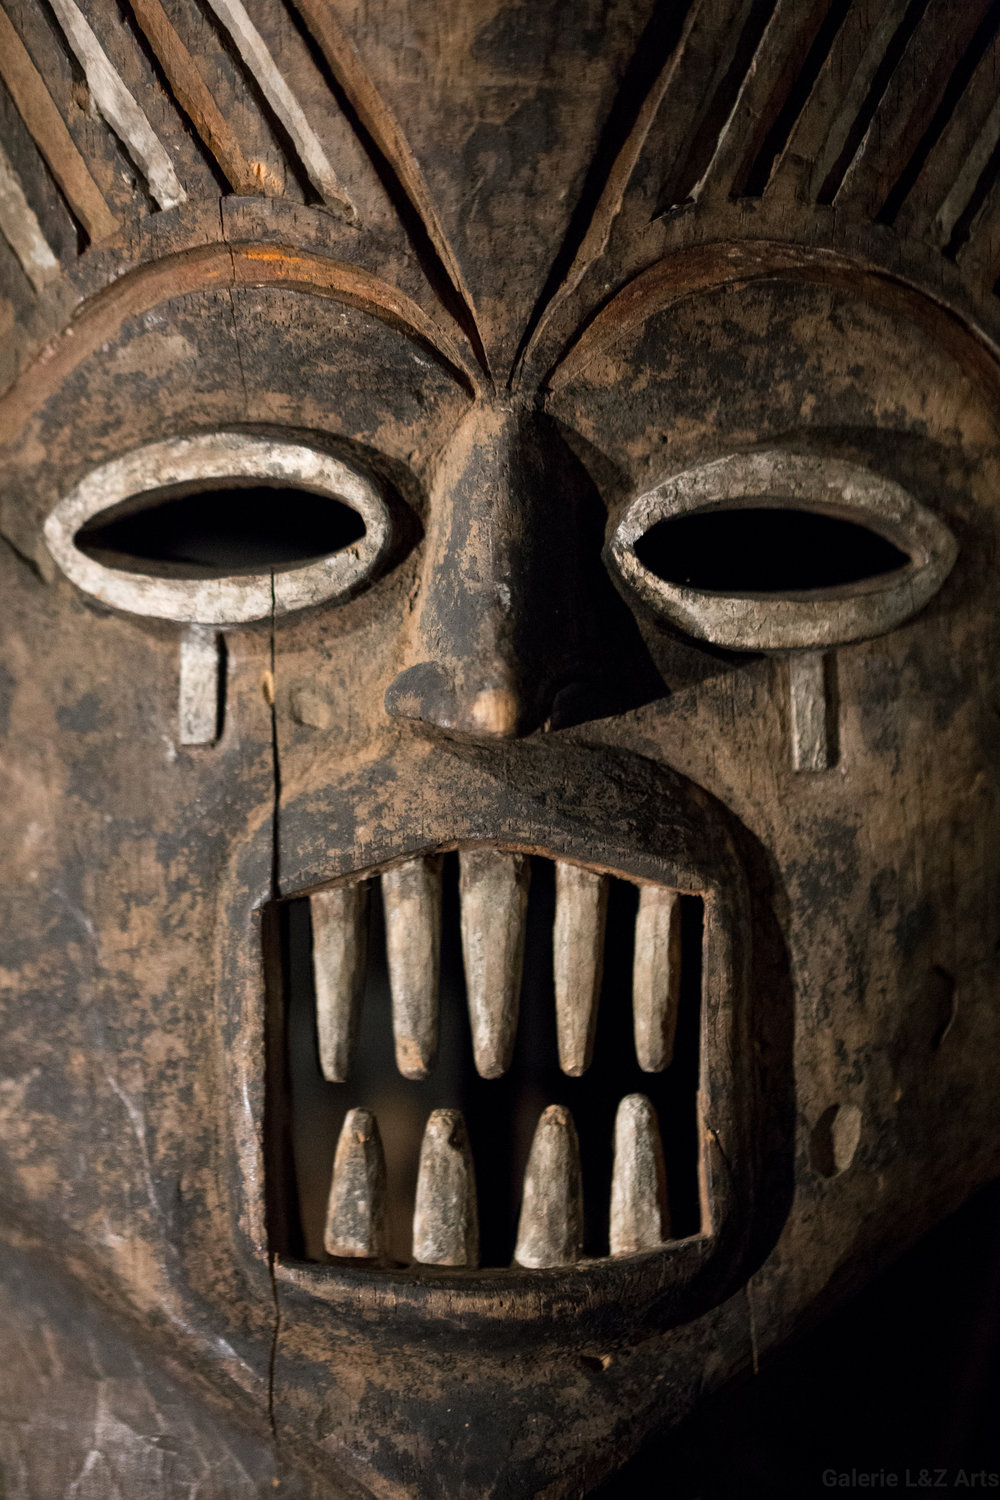 exposition-masque-art-tribal-africain-musee-quai-branly-belgique-galerie-lz-arts-liege-cite-miroir-oceanie-asie-japon-amerique-art-premier-nepal-8.jpg